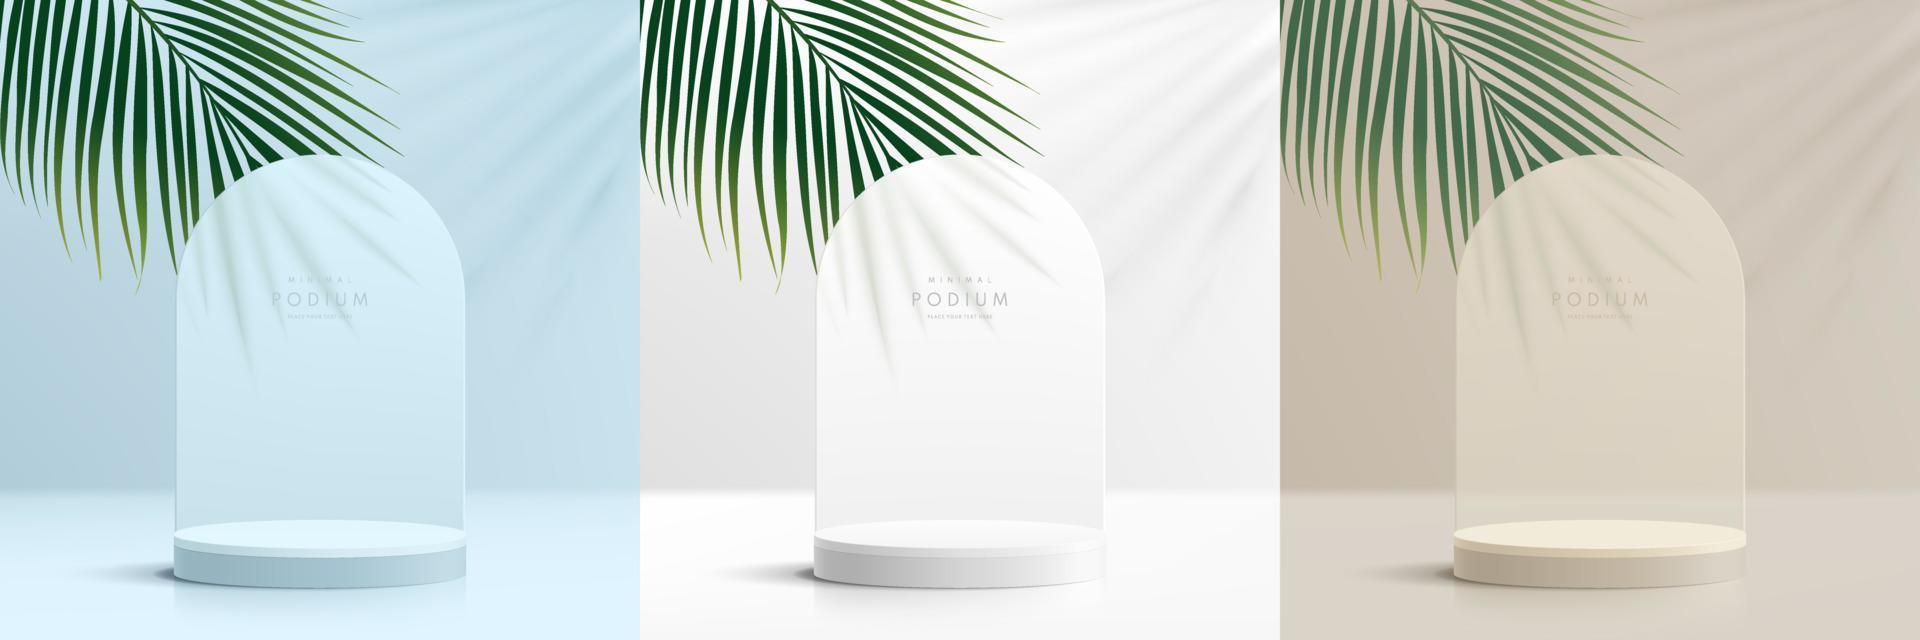 uppsättning av realistisk vit 3d cylinder podium i vit, blå, beige scen bakgrund med kokos blad. abstrakt minimal väggscen för mockup produkter display, scen för showcase. vektor geometriska former.